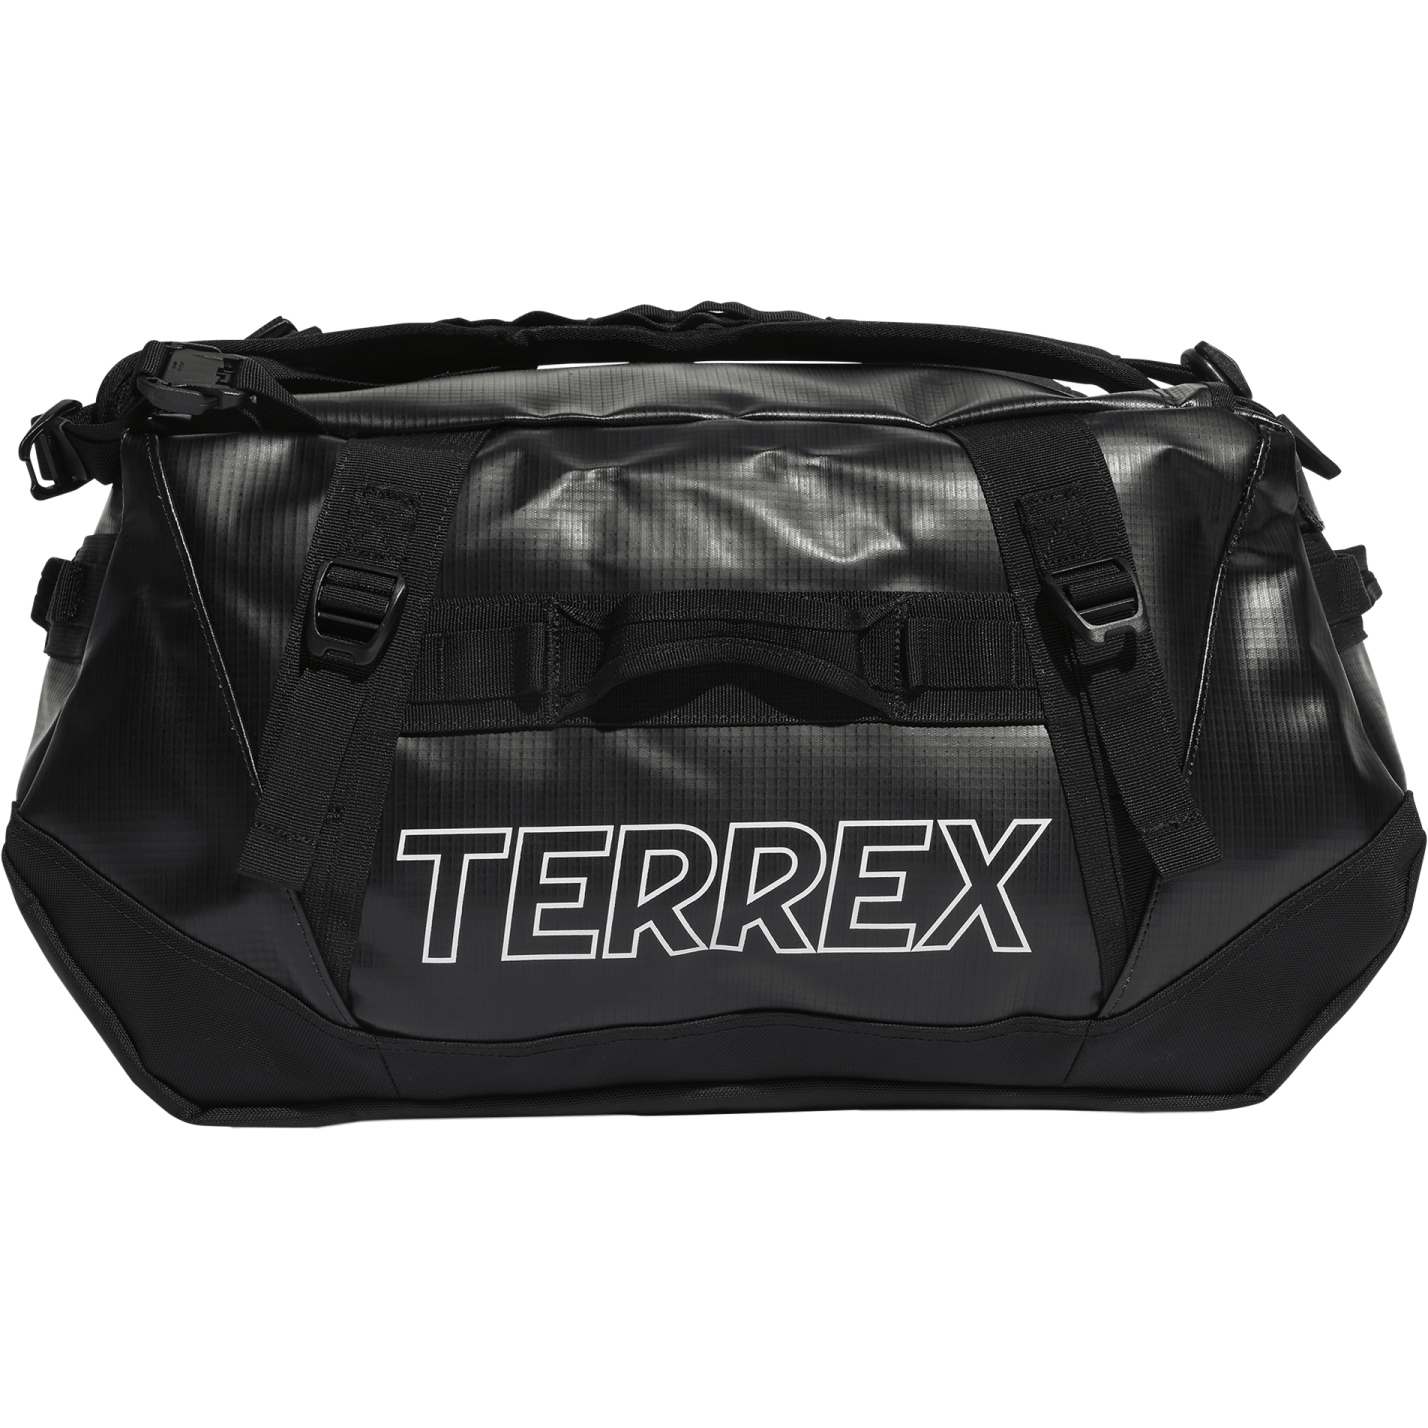 Bild von adidas TERREX RAIN.RDY Expedition Duffel Bag S - 50L - schwarz/schwarz/weiß IN8327